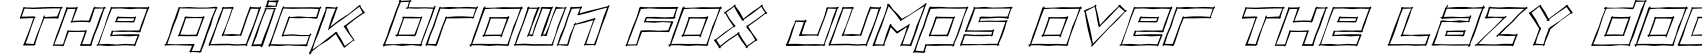 Пример написания шрифтом Sketch-Italic текста на английском